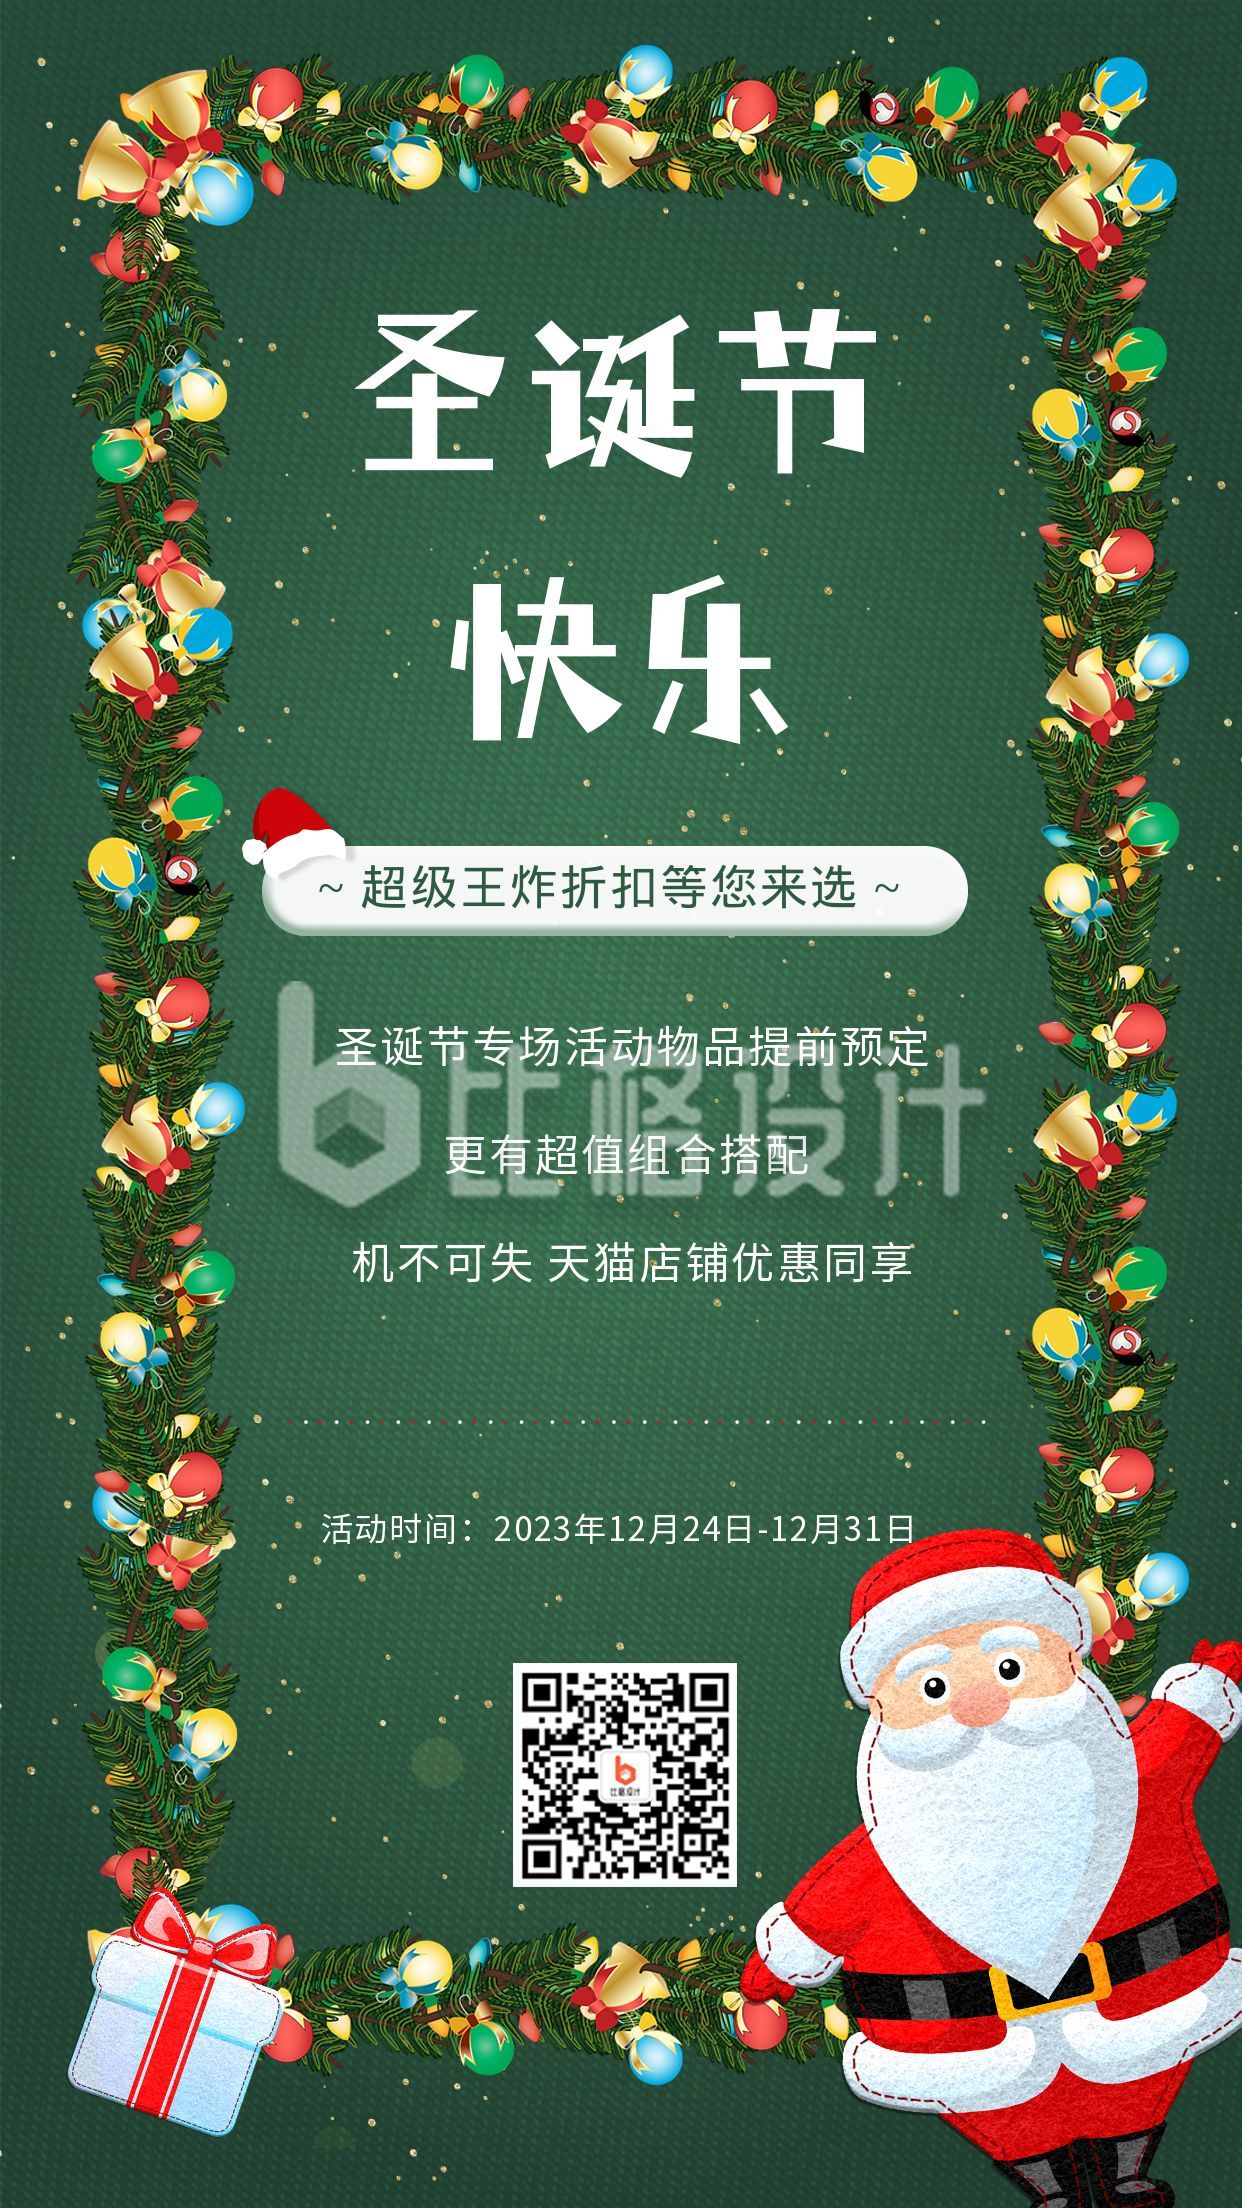 圣诞节促销活动宣传手机海报